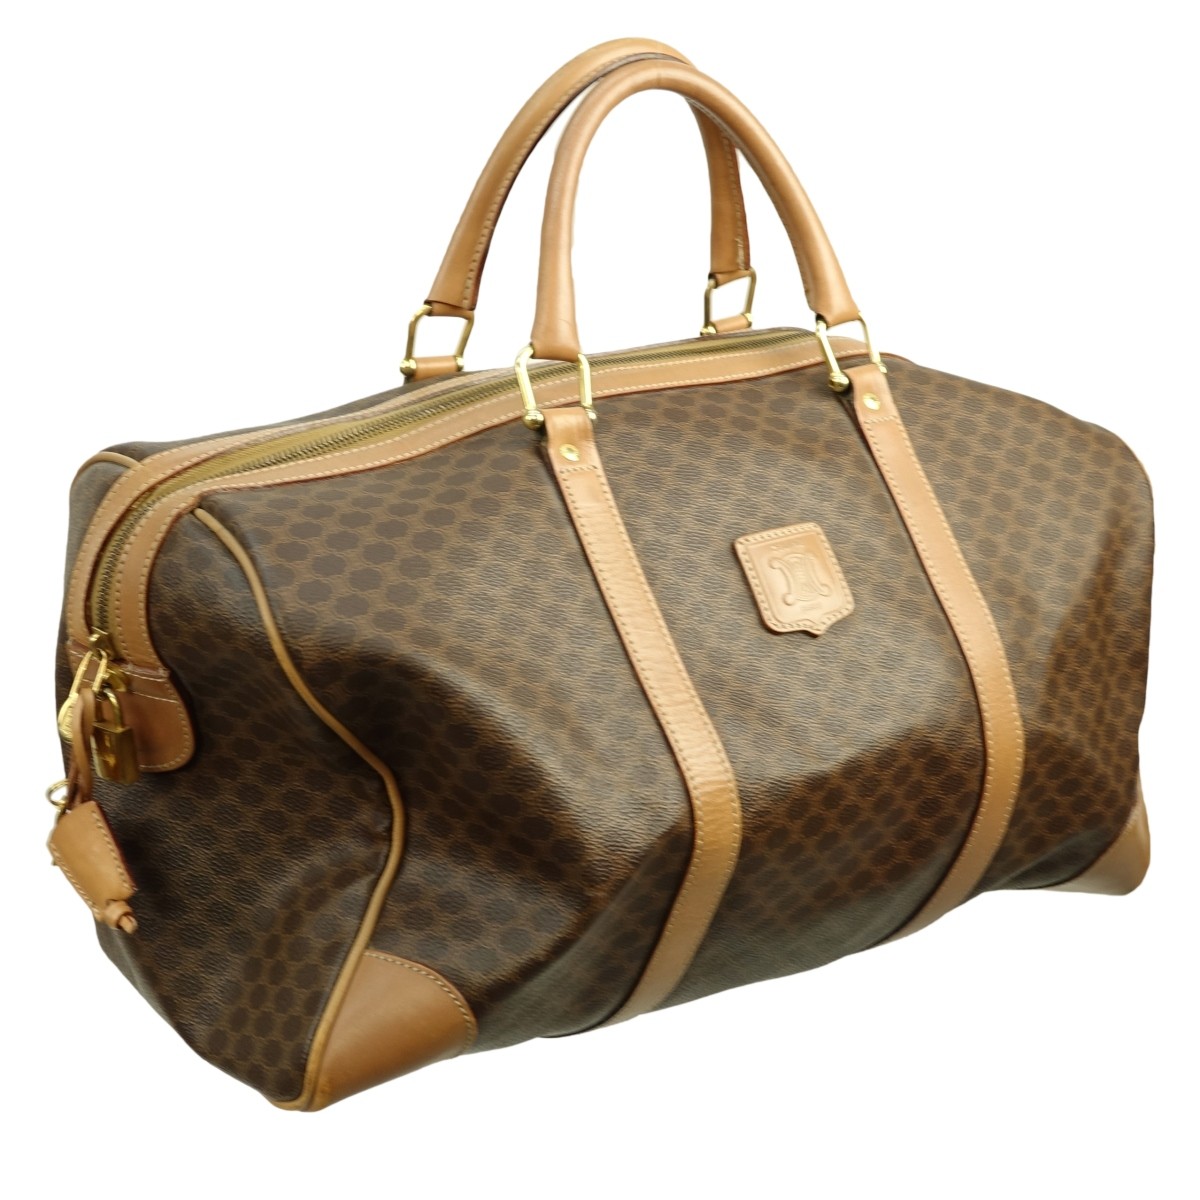 Celine Travel Bag